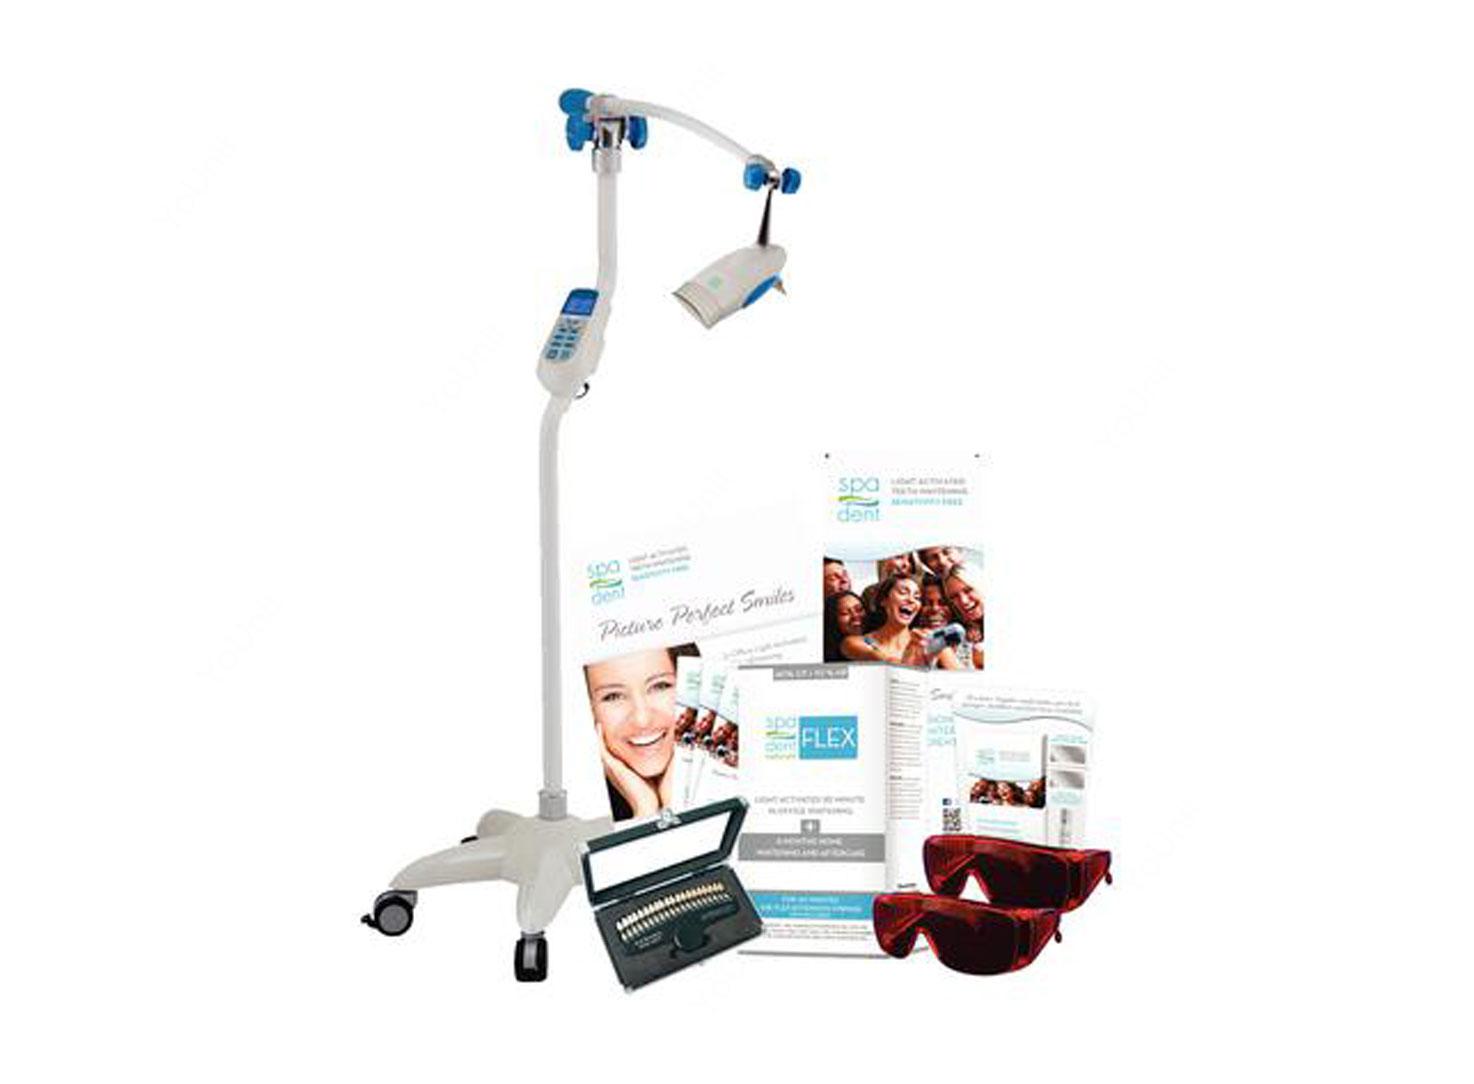 دستگاه بلیچینگ آفیس دندانپزشکی مدل SD900 برند Spa Dent